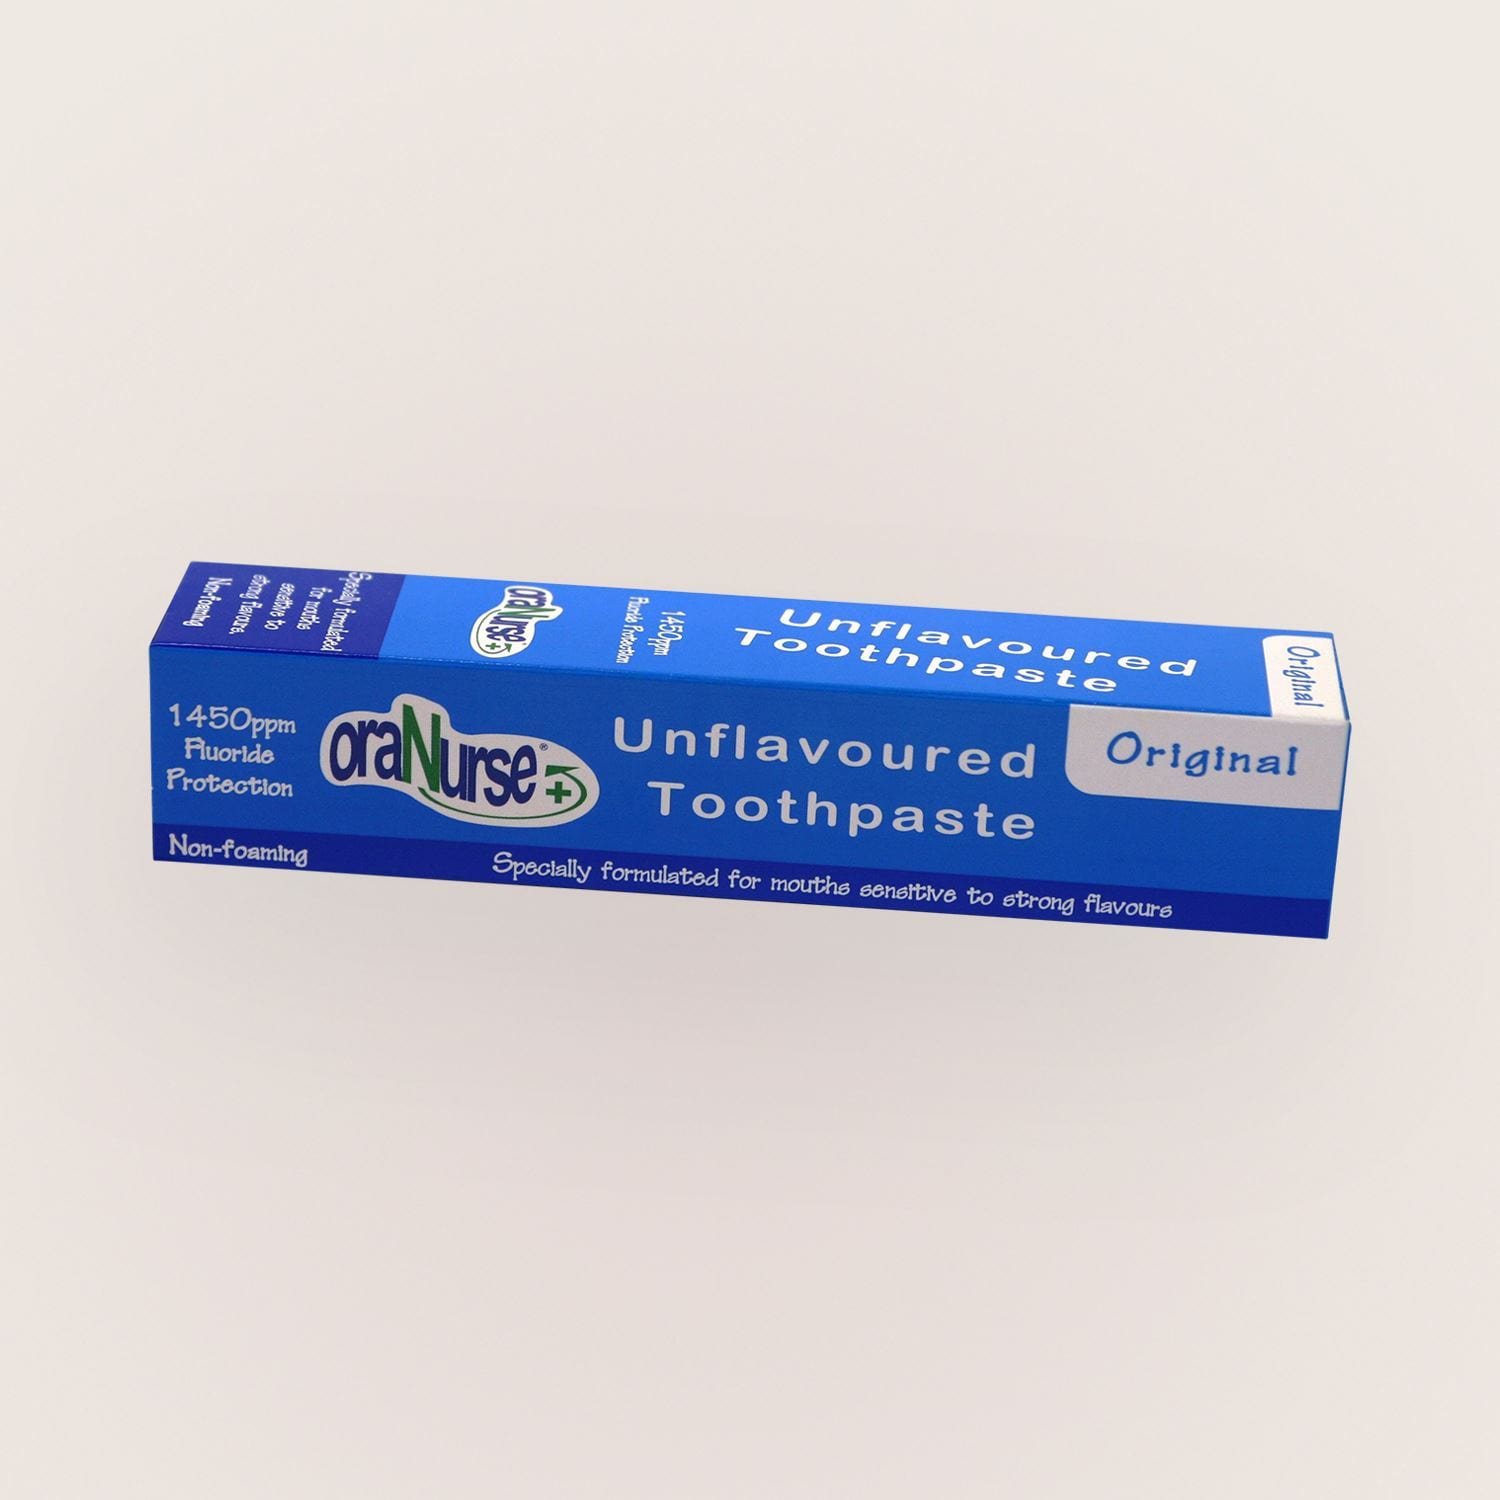 Oranurse Unflavoured Toothpaste 50ml